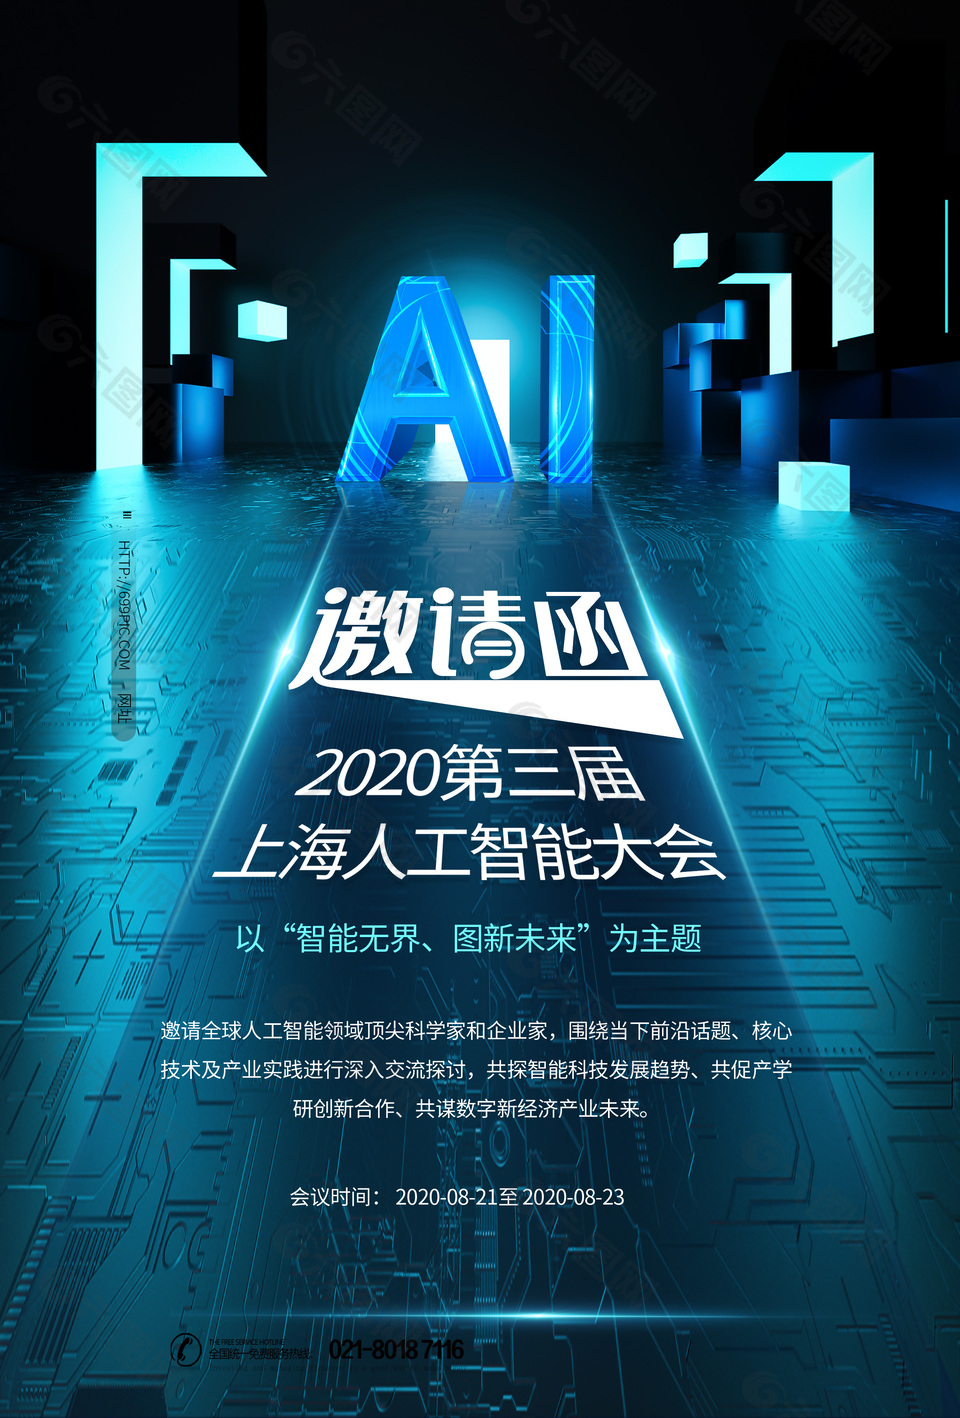 上海人工智能大会蓝色邀请函素材下载